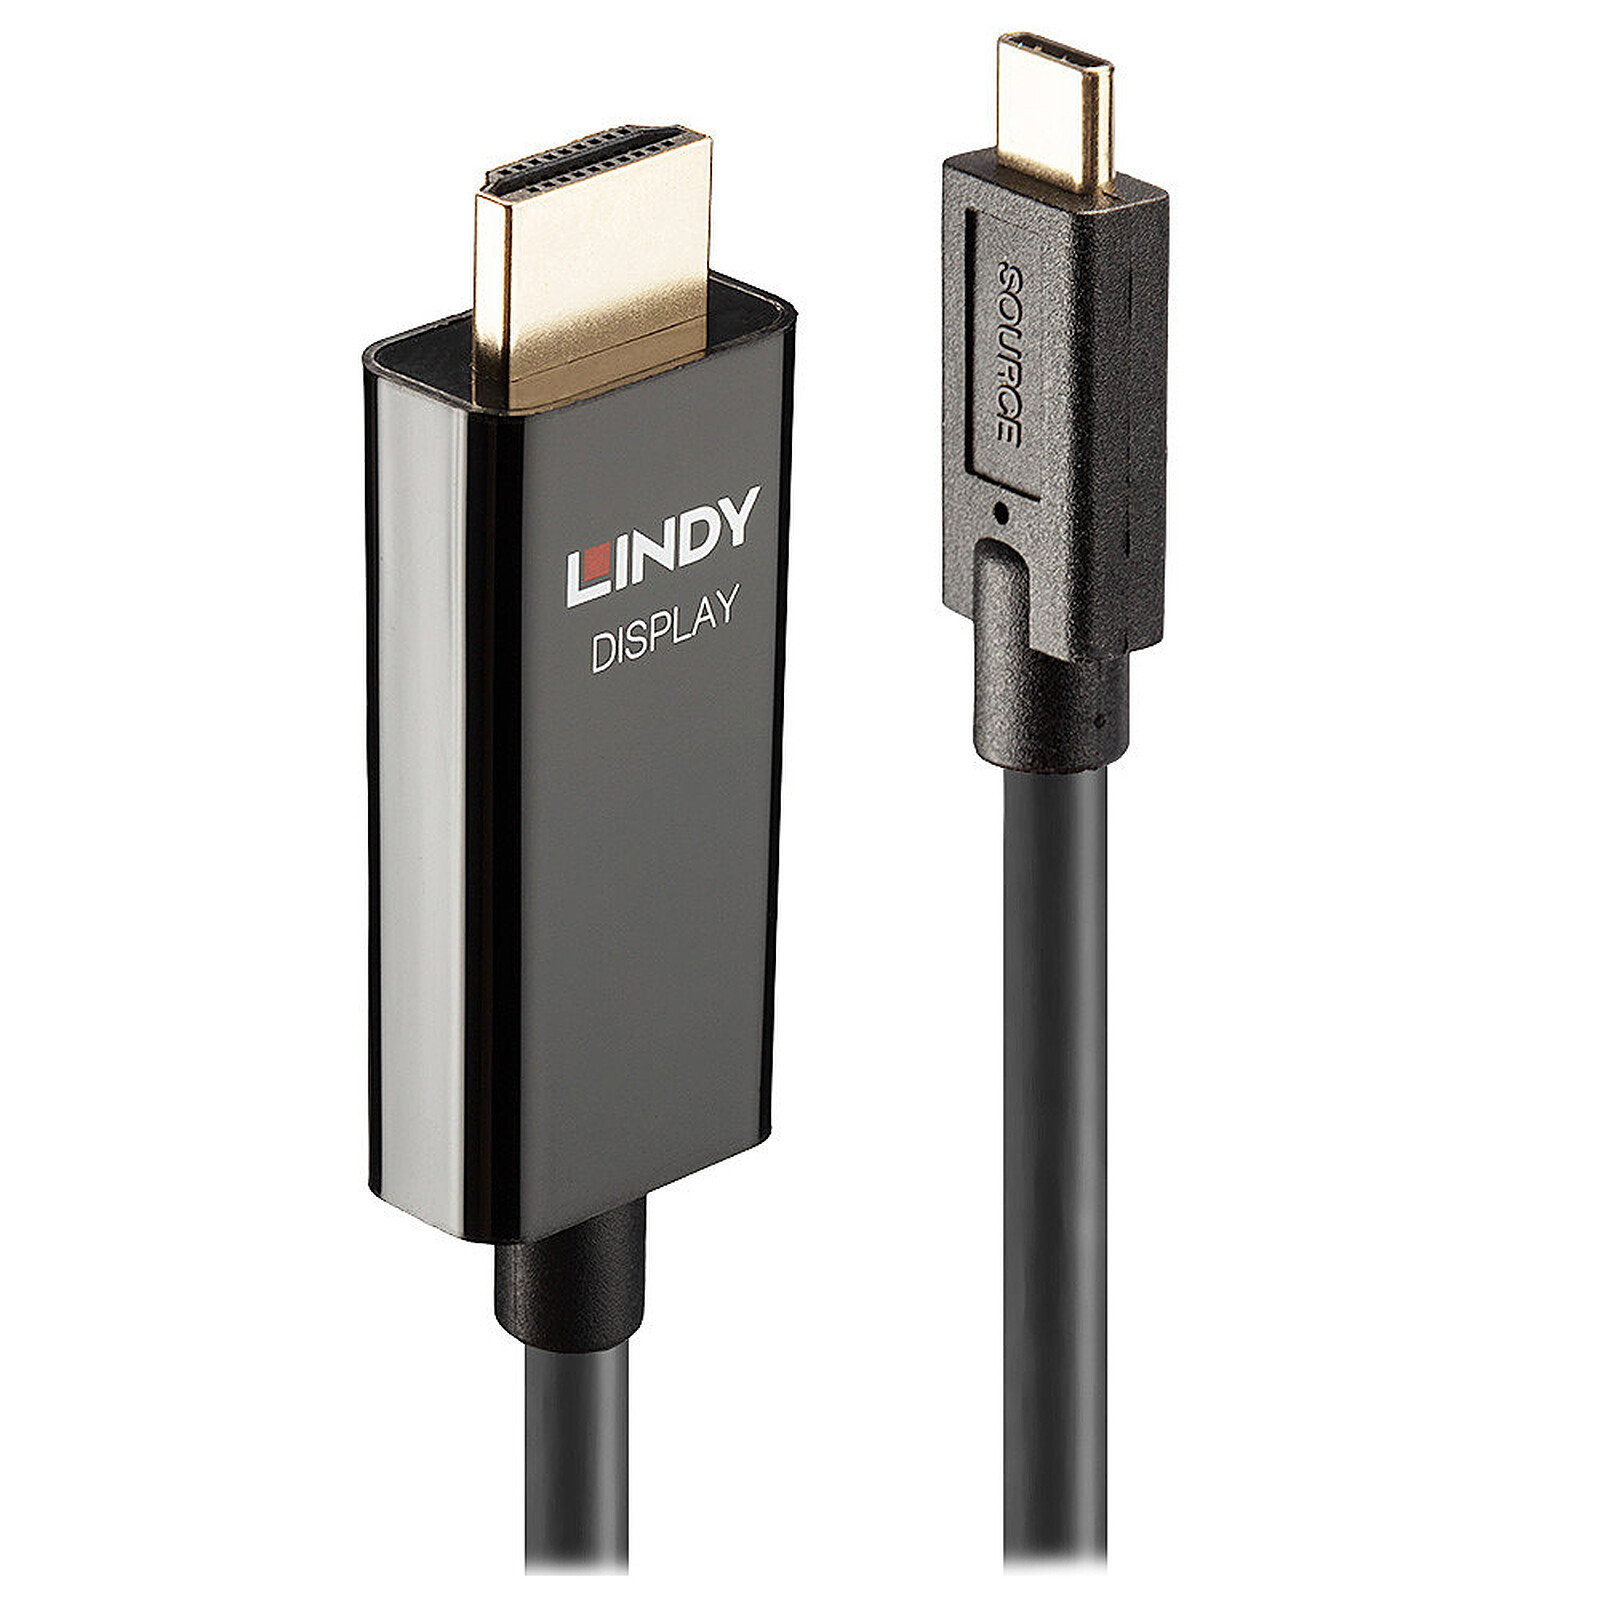 Cable USB tipo C macho a HDMI macho 4K – Cables y Conectores